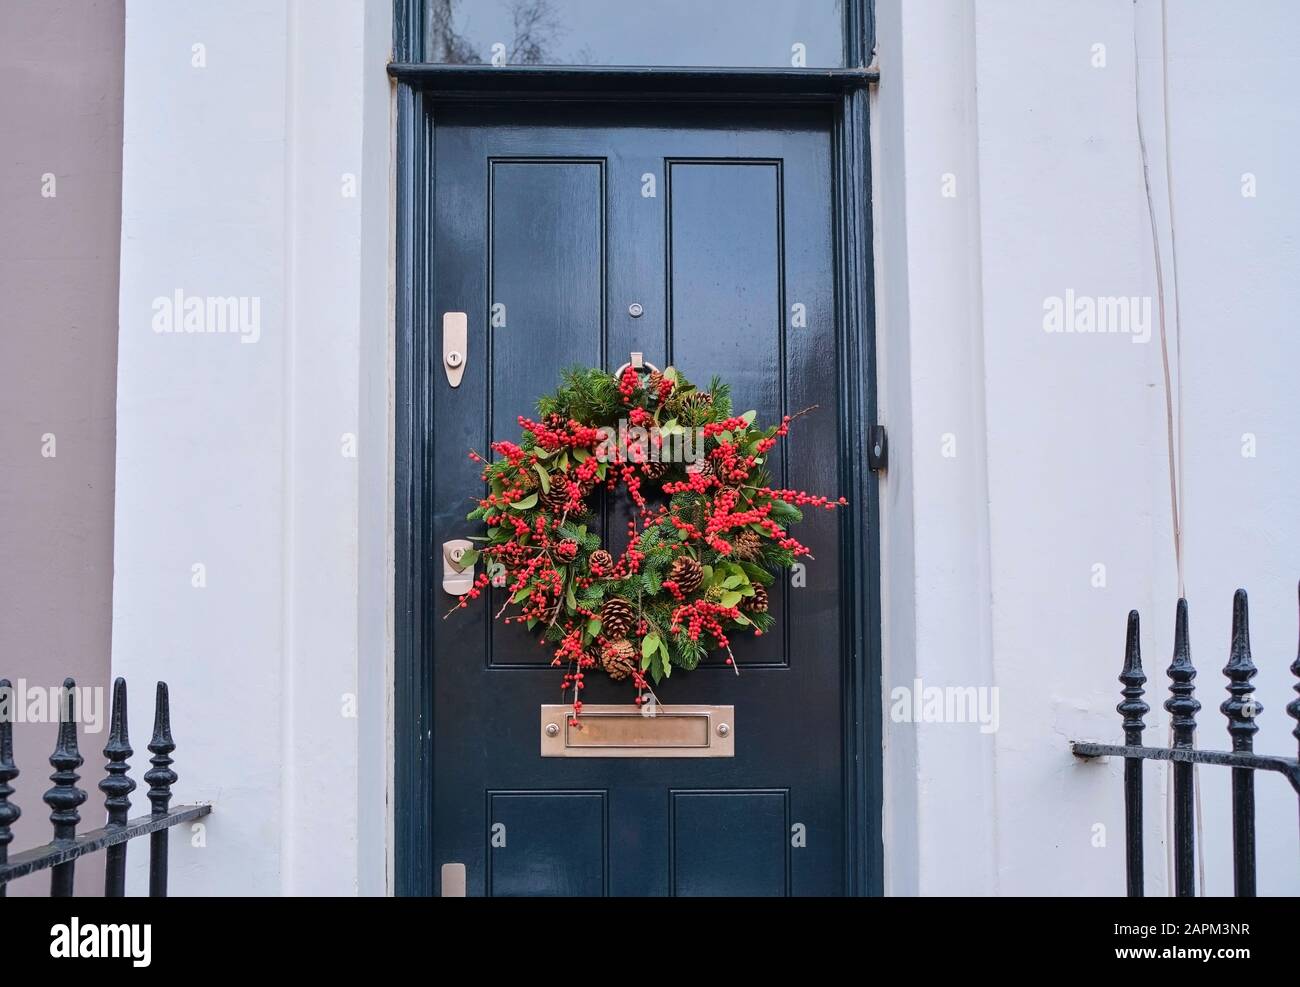 Großbritannien, England, London, Weihnachtskranz hängt an der Eingangstür des Hauses Stockfoto